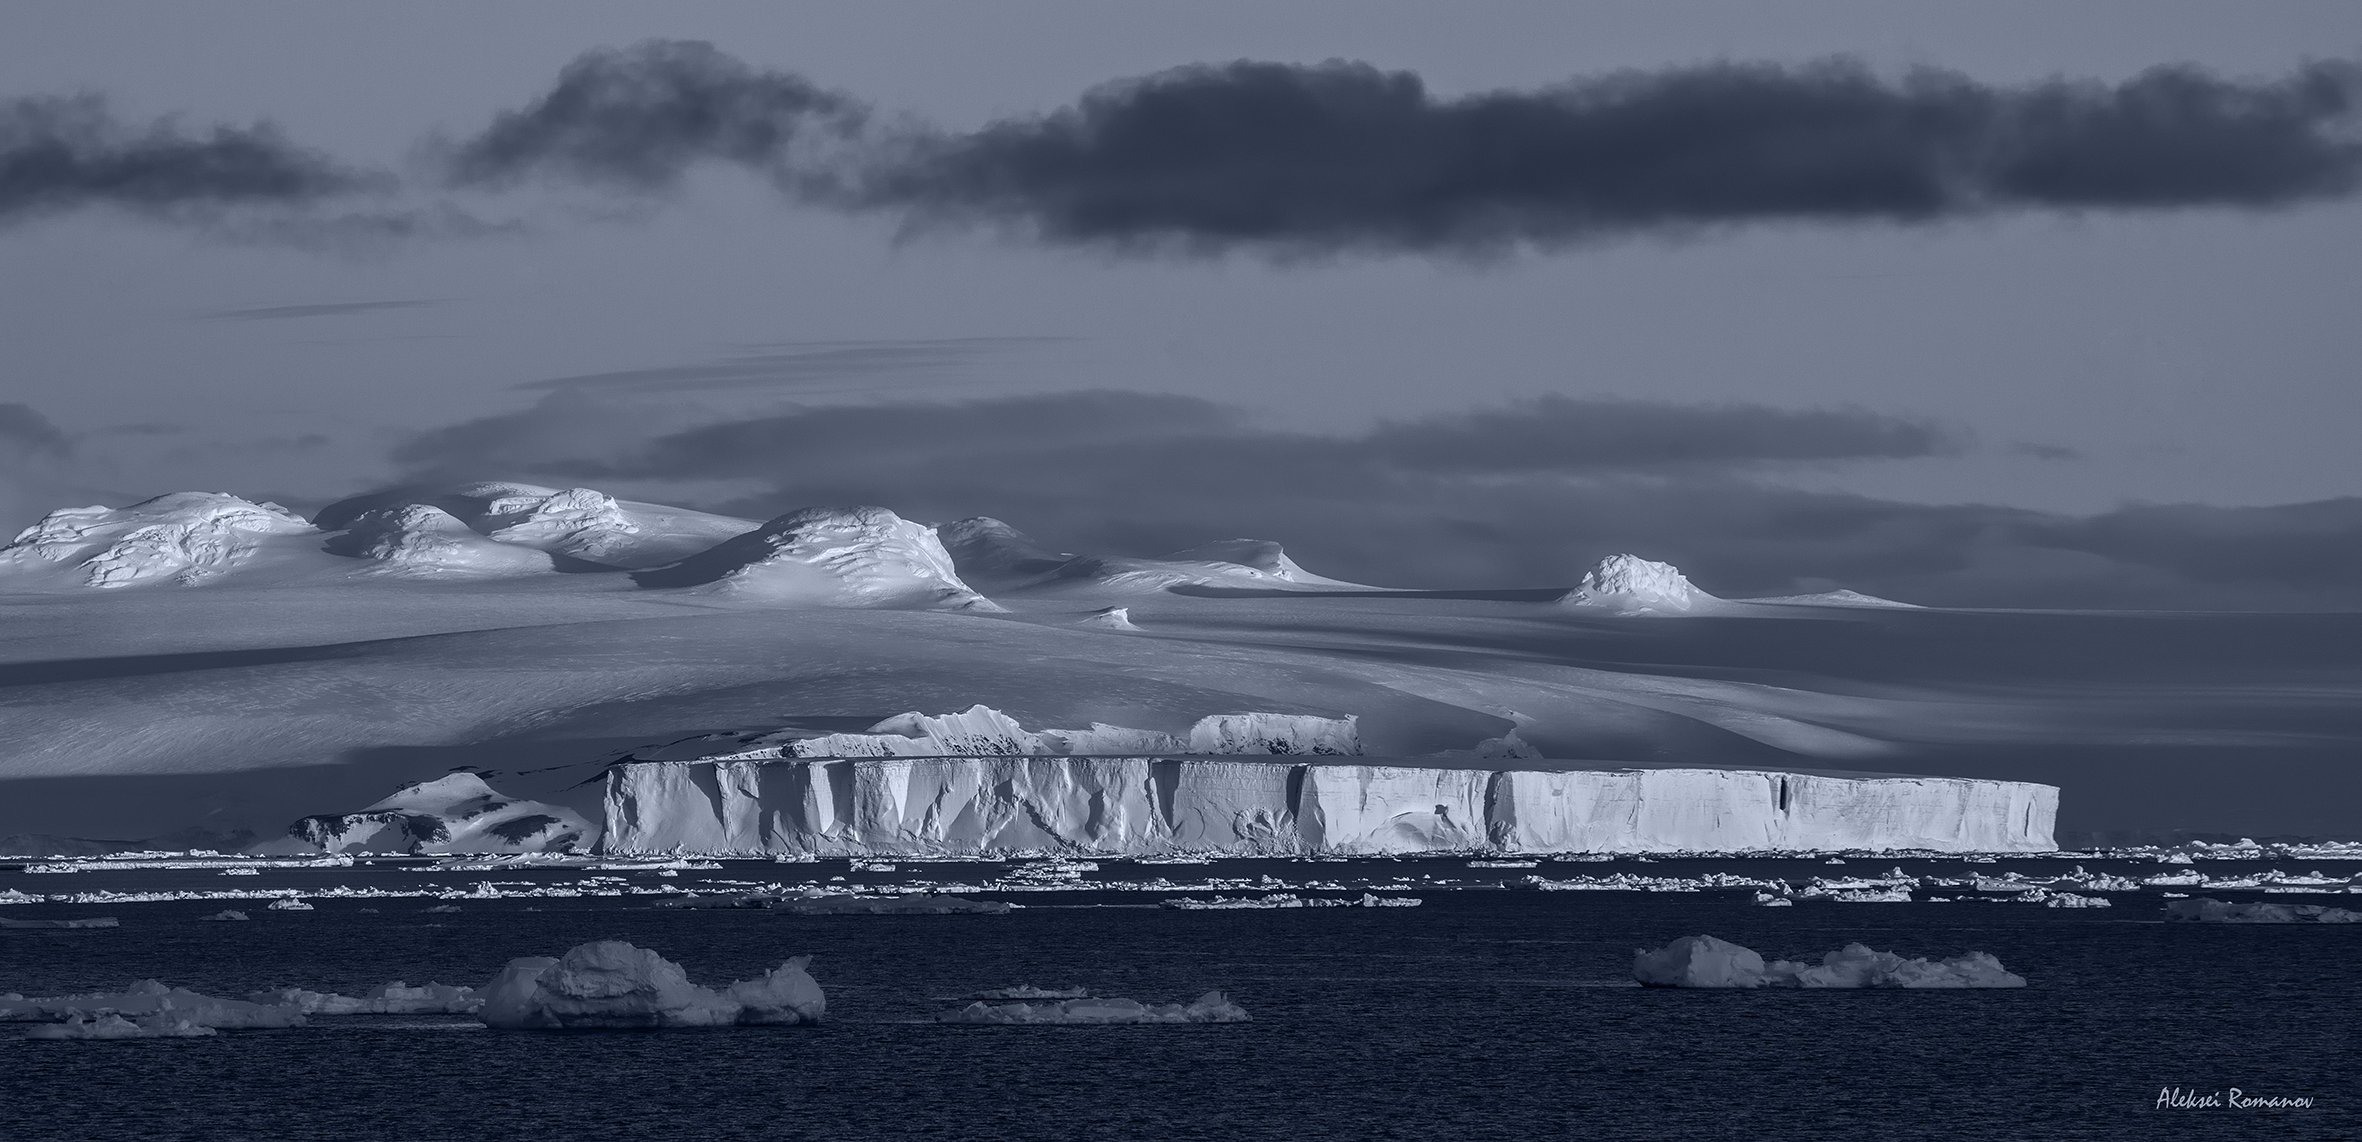 антарктида, льды, путешествия, природа, Алексей Романов